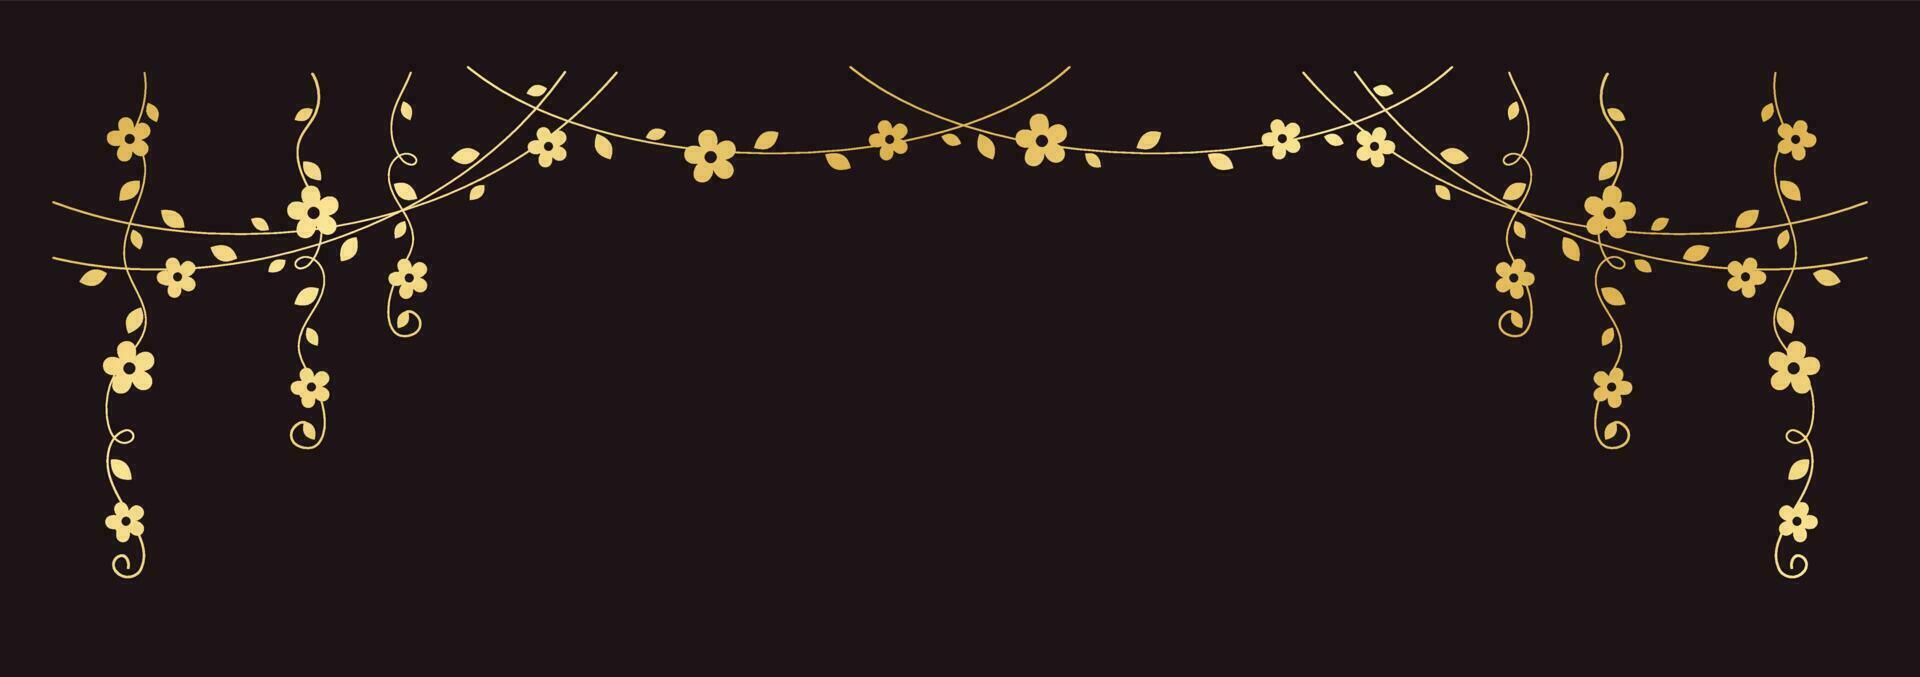 Gold Reben mit Blumen Vektor Illustration. einfach minimal golden Blumen- botanisch Vorhang Design Elemente zum Frühling.